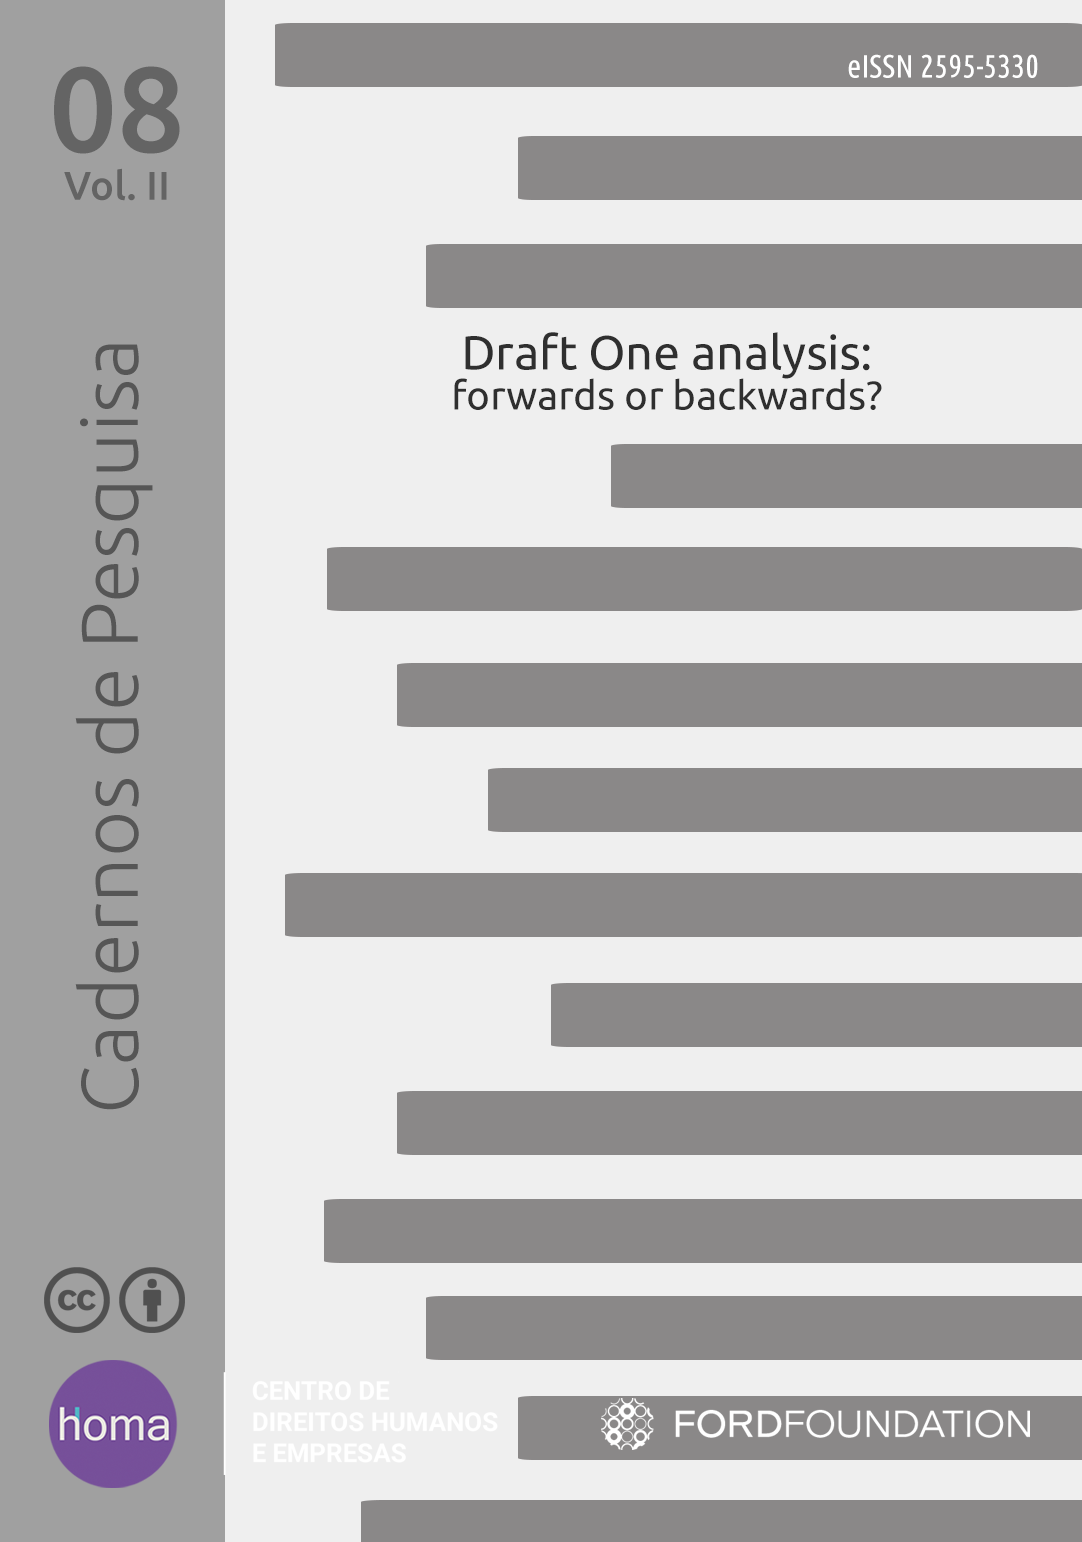 Draft One analysis: forwards or backwards?